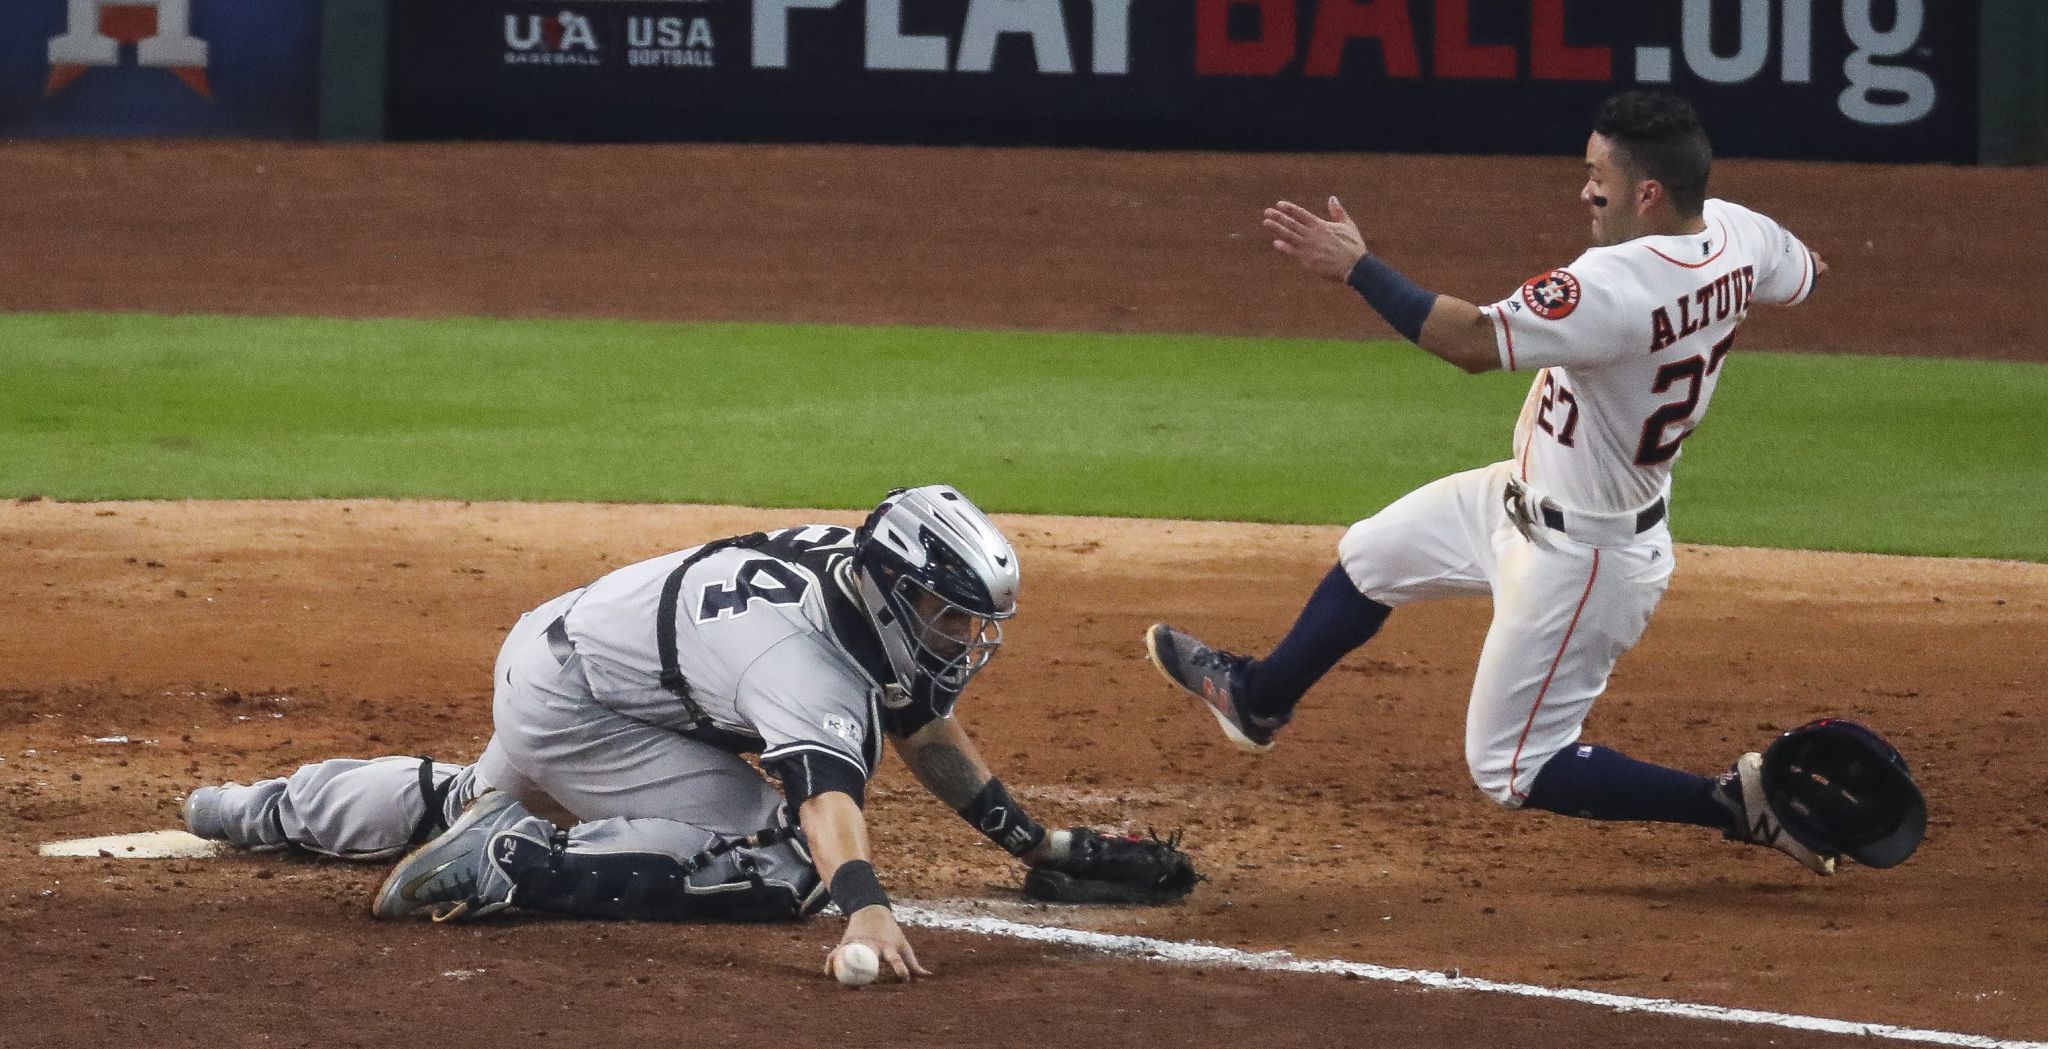 Yankees' Gary Sanchez Takes Shot at Astros' Jose Altuve, 'If I Hit